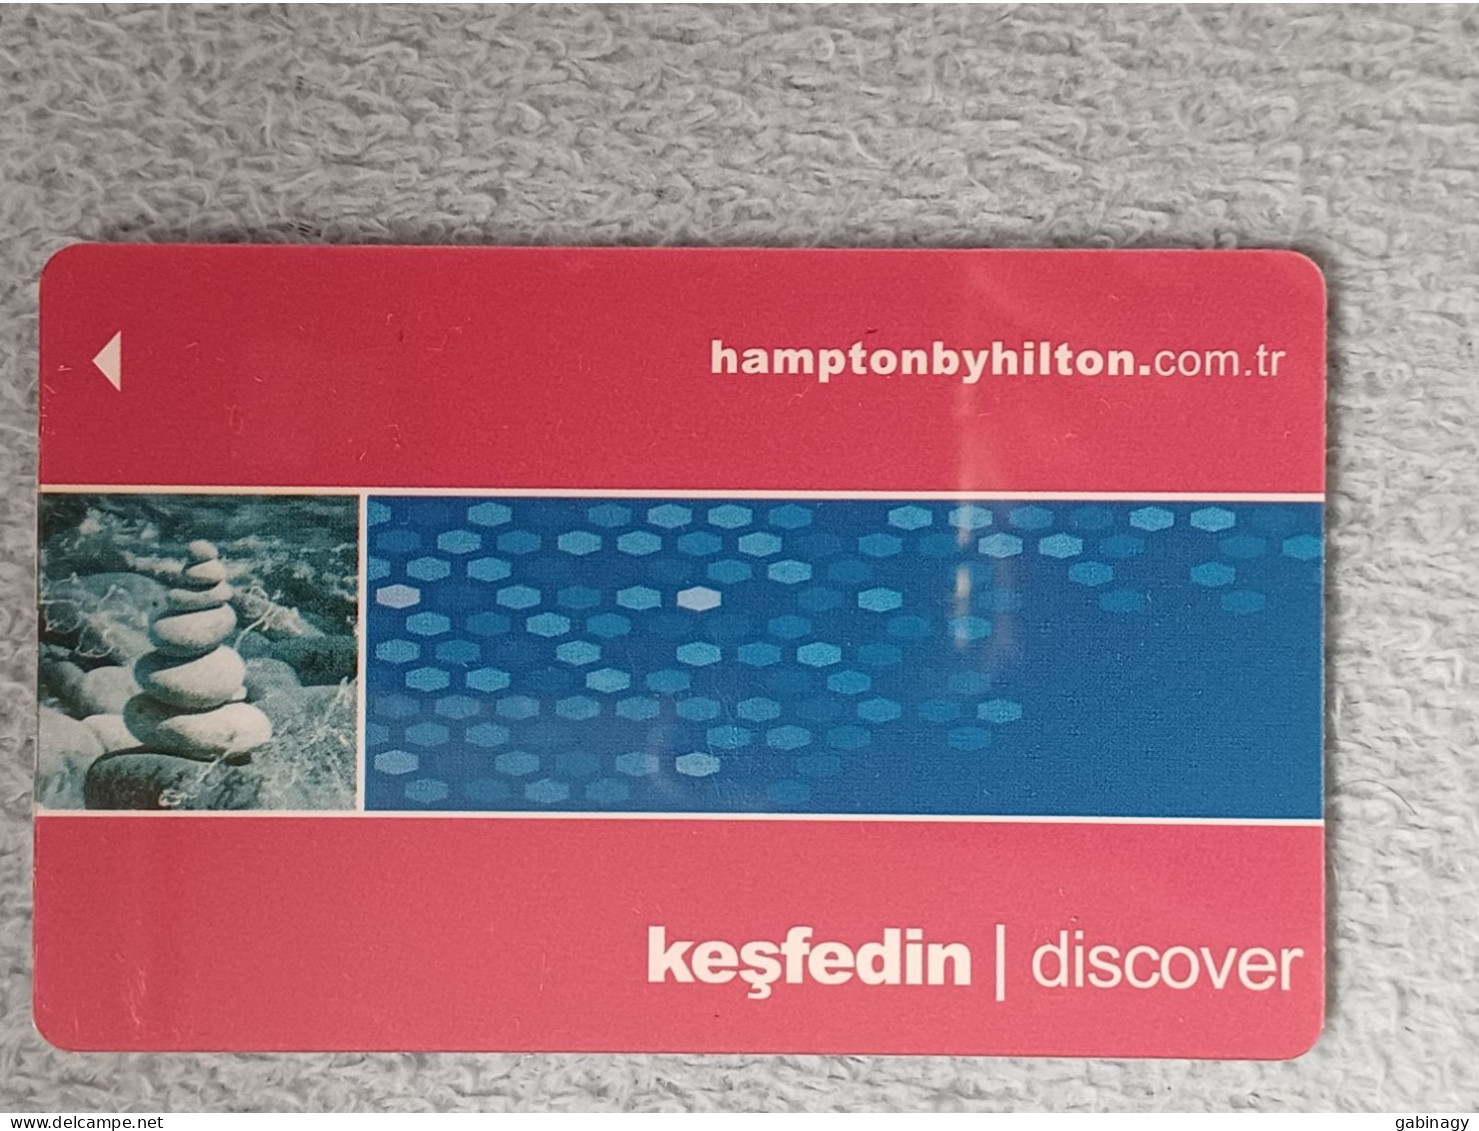 HOTEL KEYS - 2527 - TURKEY - HAMPTON BY HILTON DISCOVER - Hotelsleutels (kaarten)